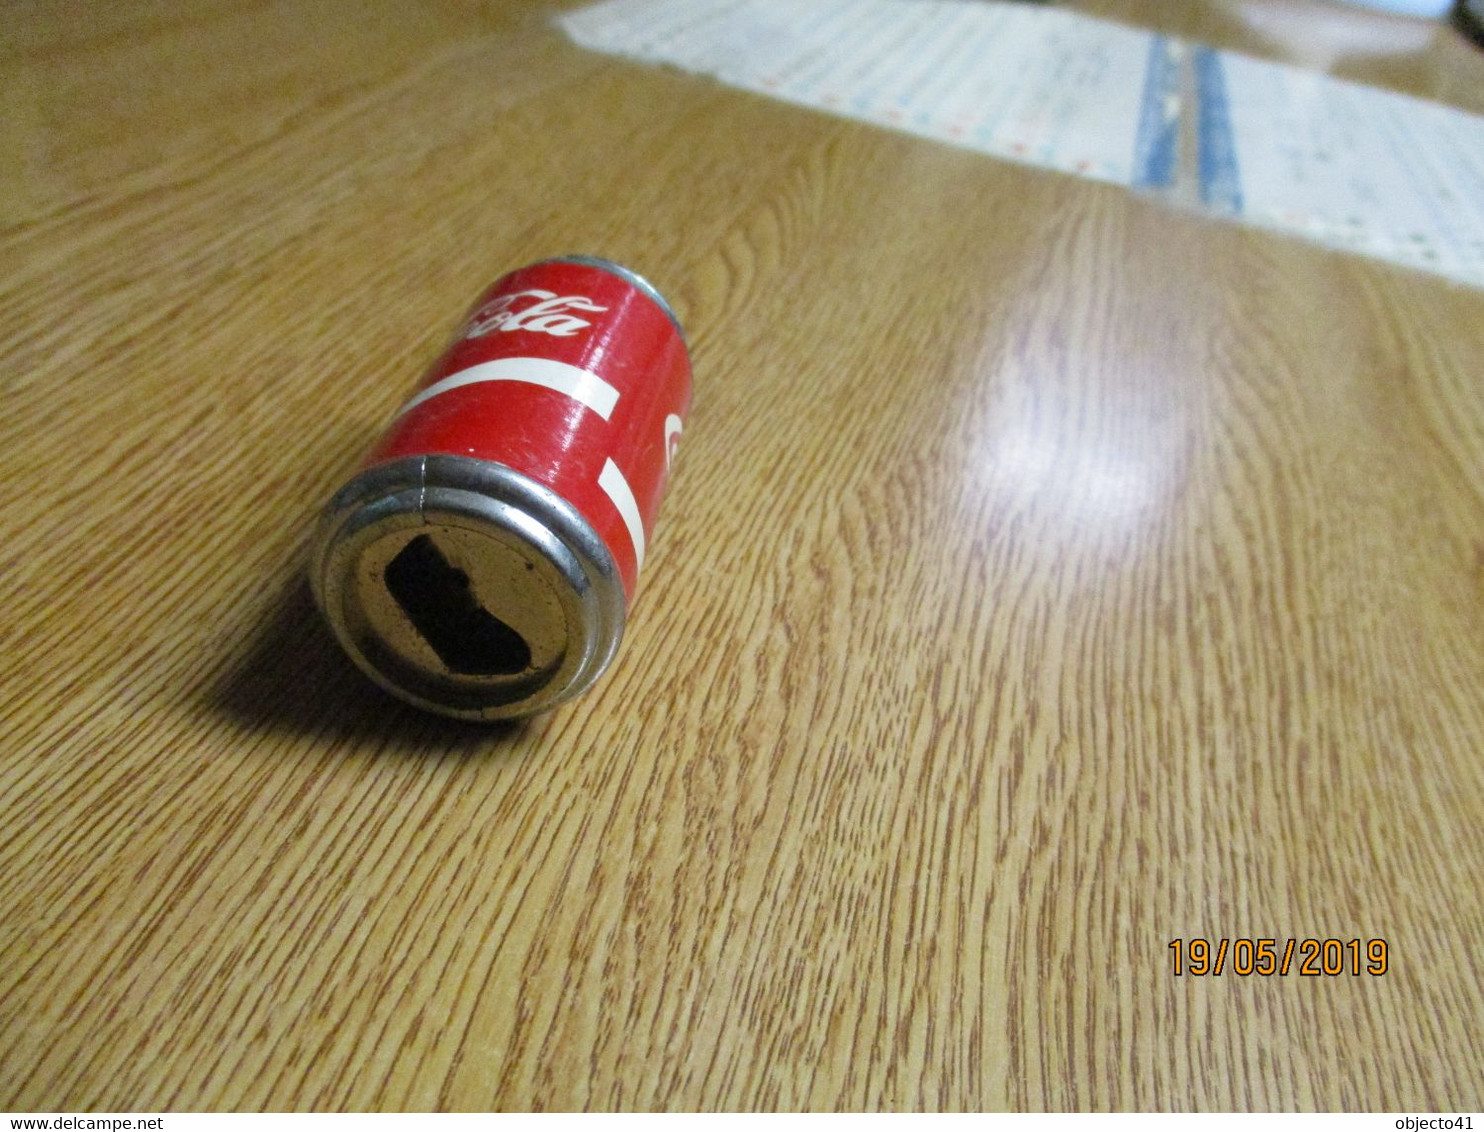 Old Lighter Briquet Adversting Publicite Coca Cola Coke - Lighters